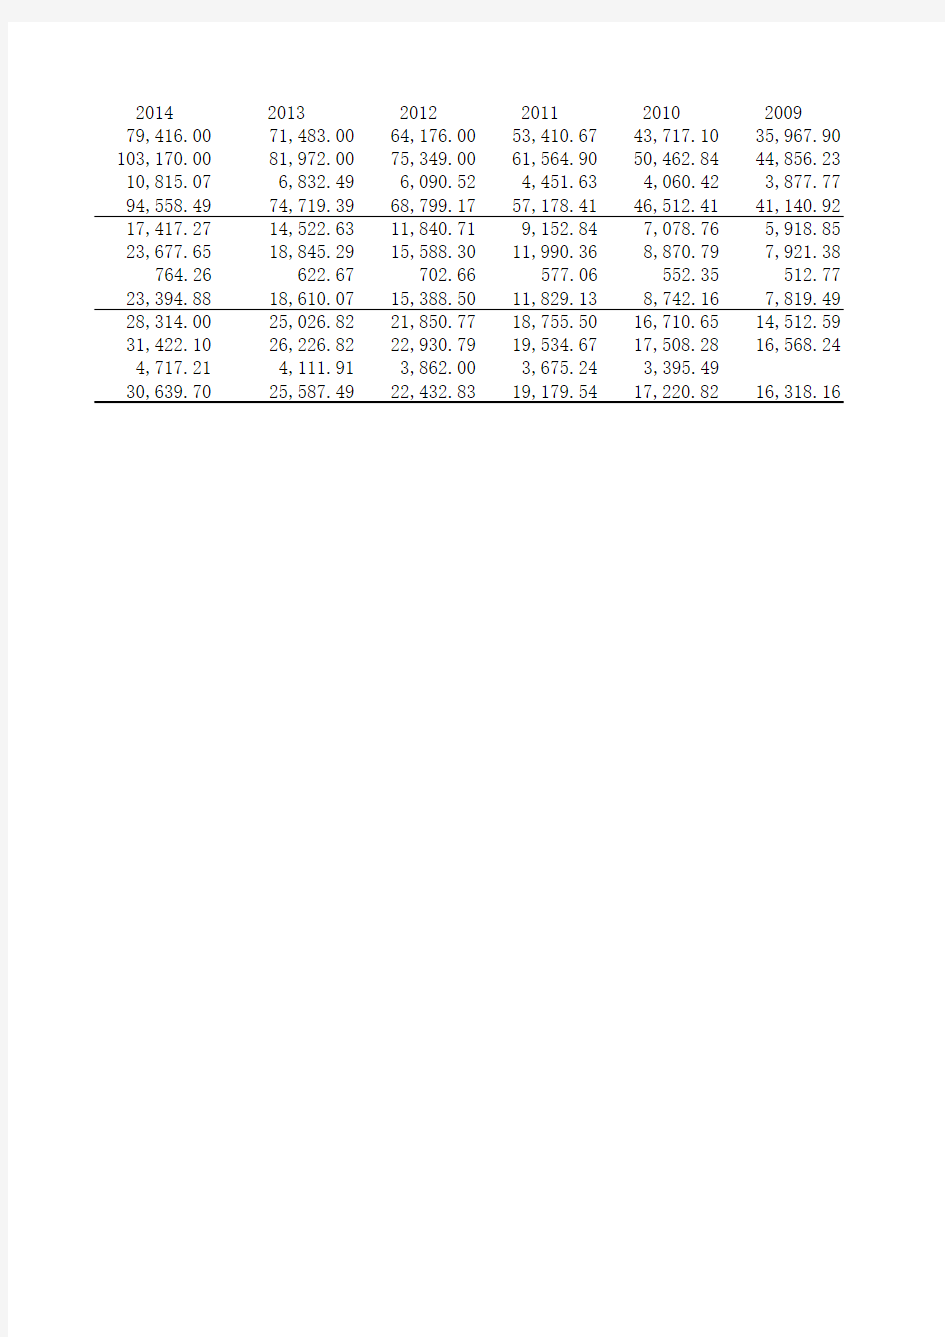 三大政策性银行(农发行、国开行、进出口)2007-2019资产负债、存贷款数据